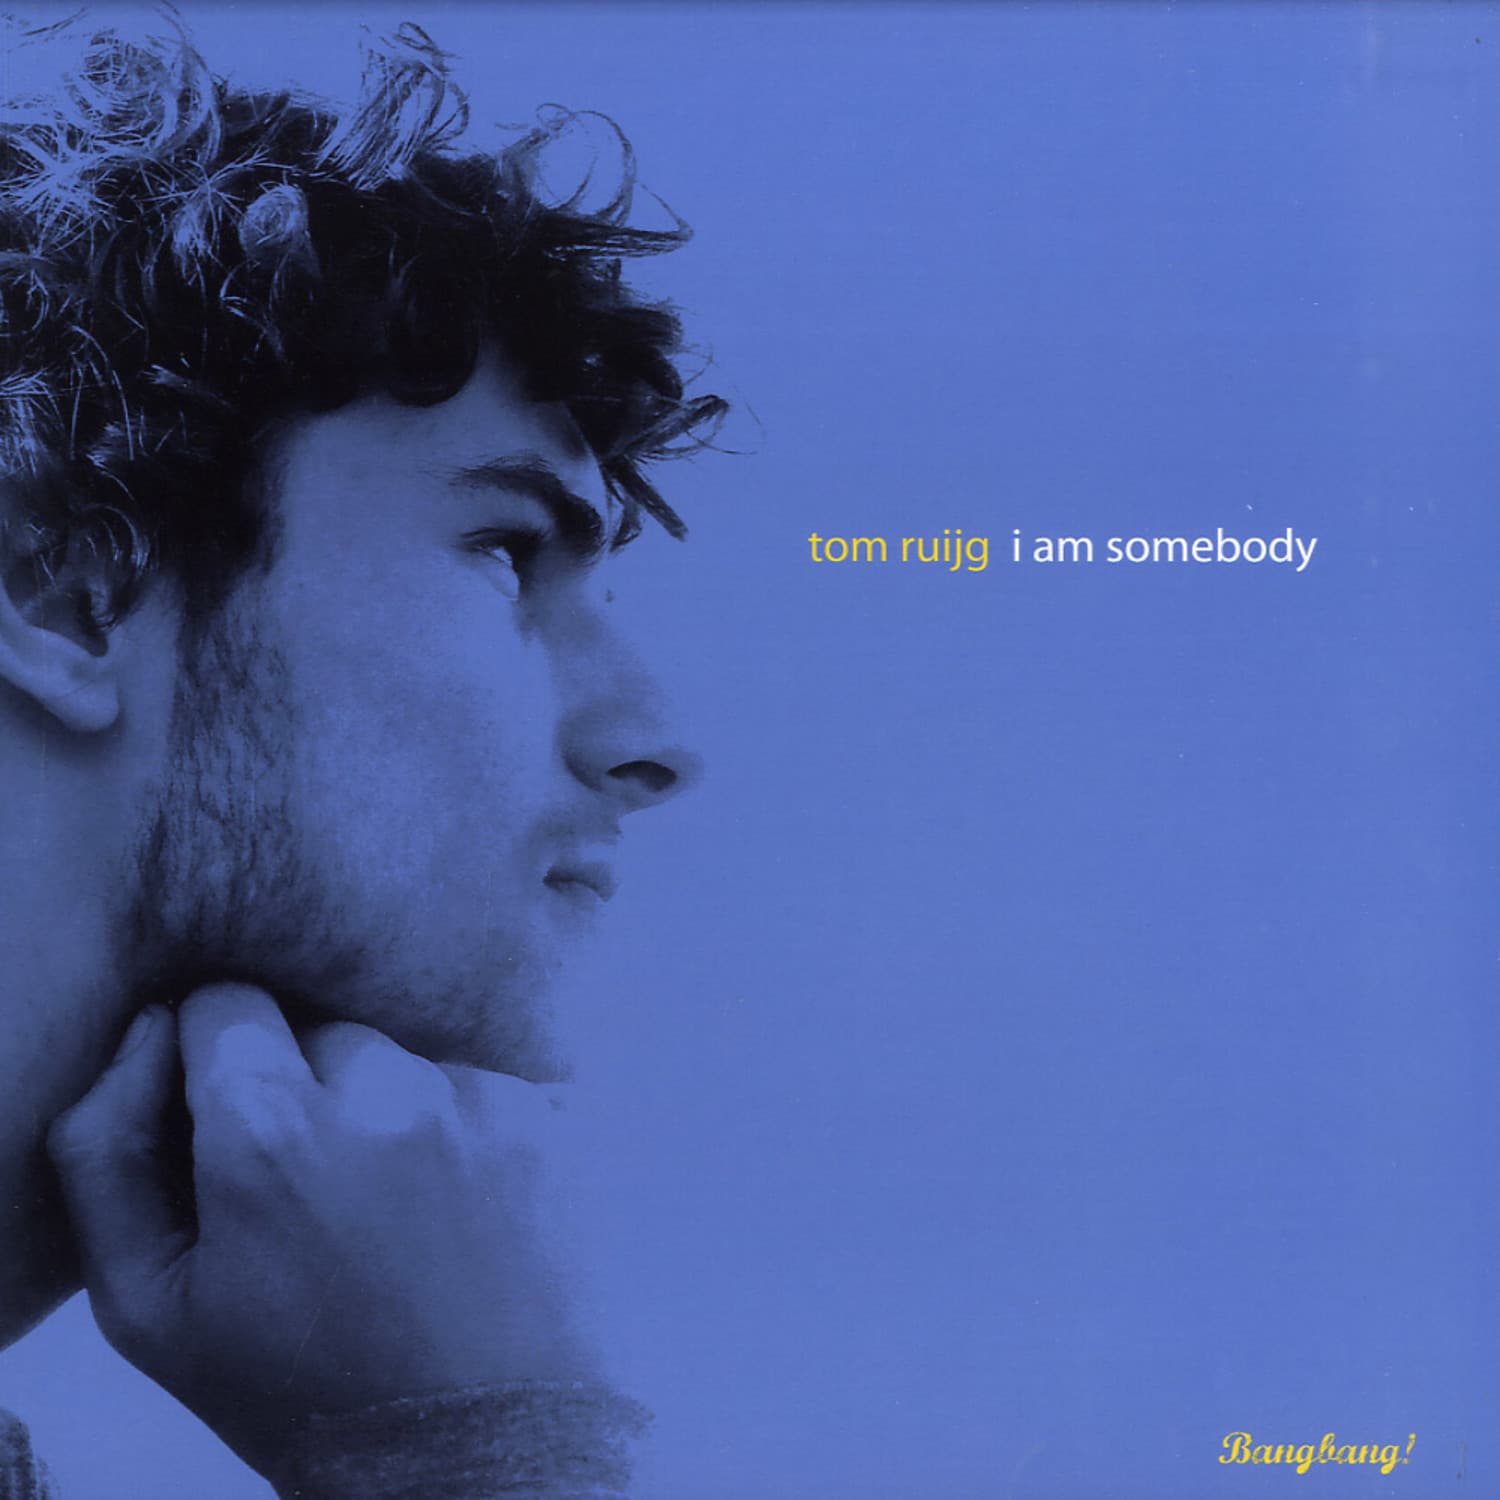 Tom Ruijg - I AM SOMEBODY